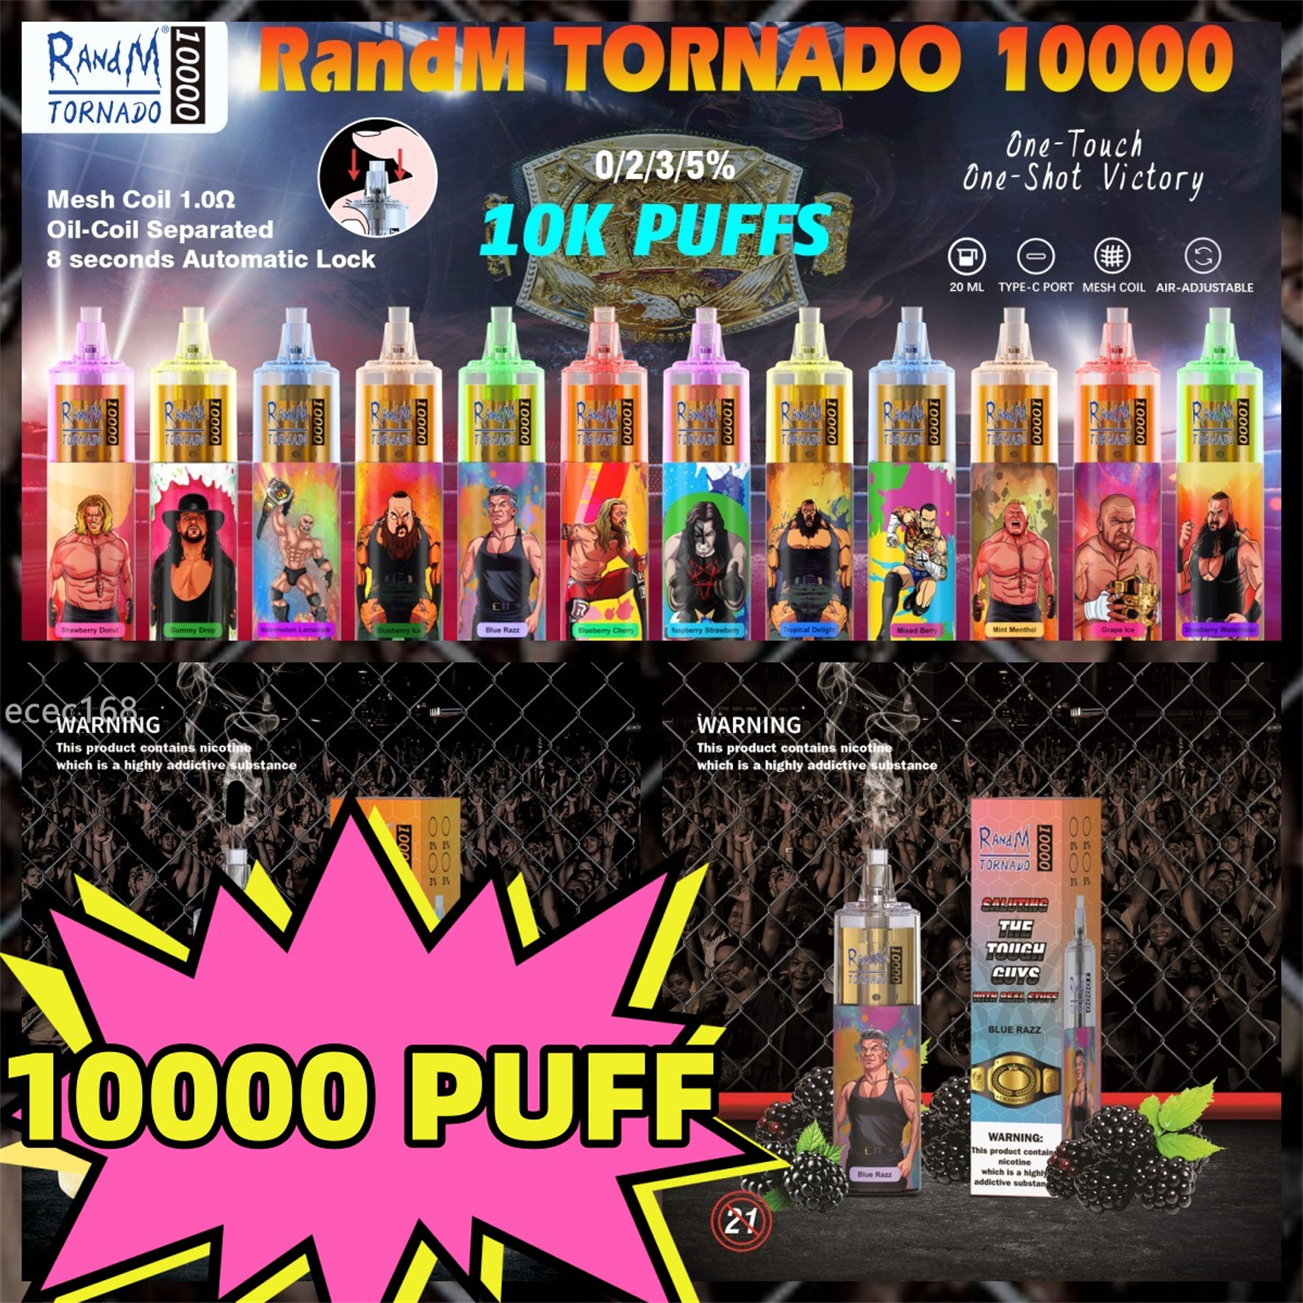 

puff 10000 randm tornado 10000 disposable vape e cigarette airflow control device 6 colors rgb light 0% 2% 3% 5% optional ouff 10K puffs vapes pen 24 flavors wholesale